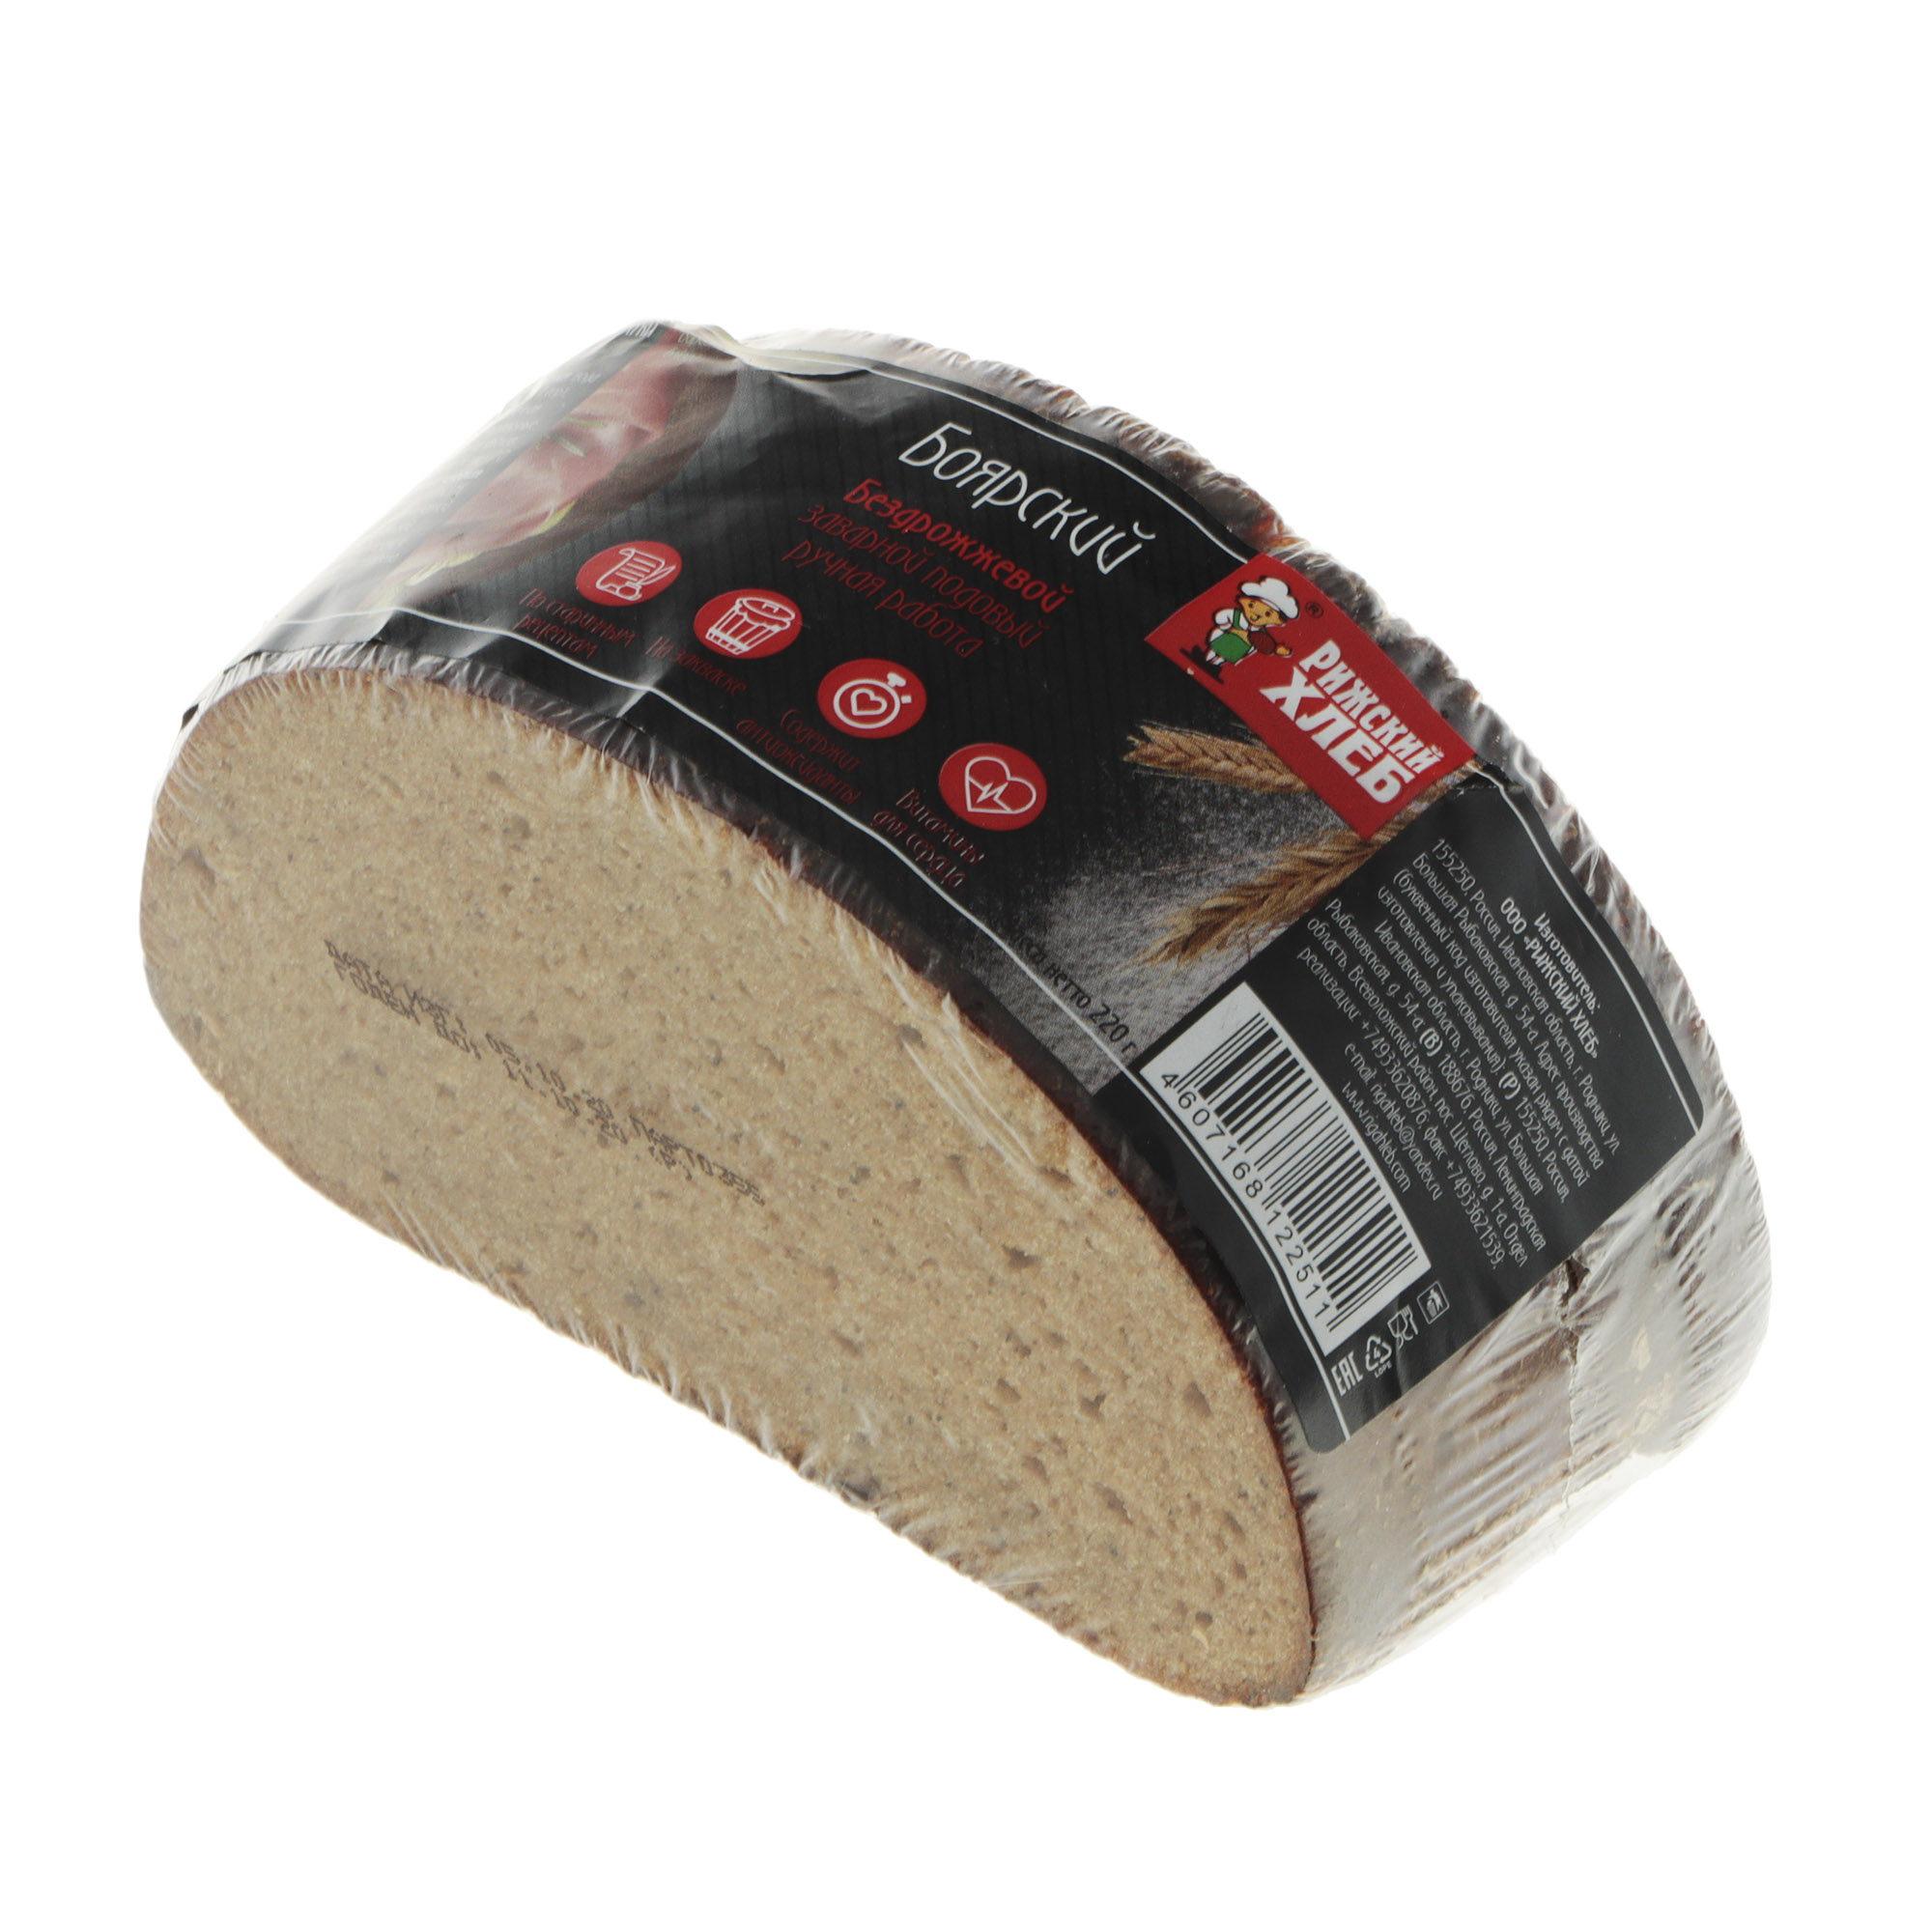 Хлеб Рижский хлеб боярский 220 г